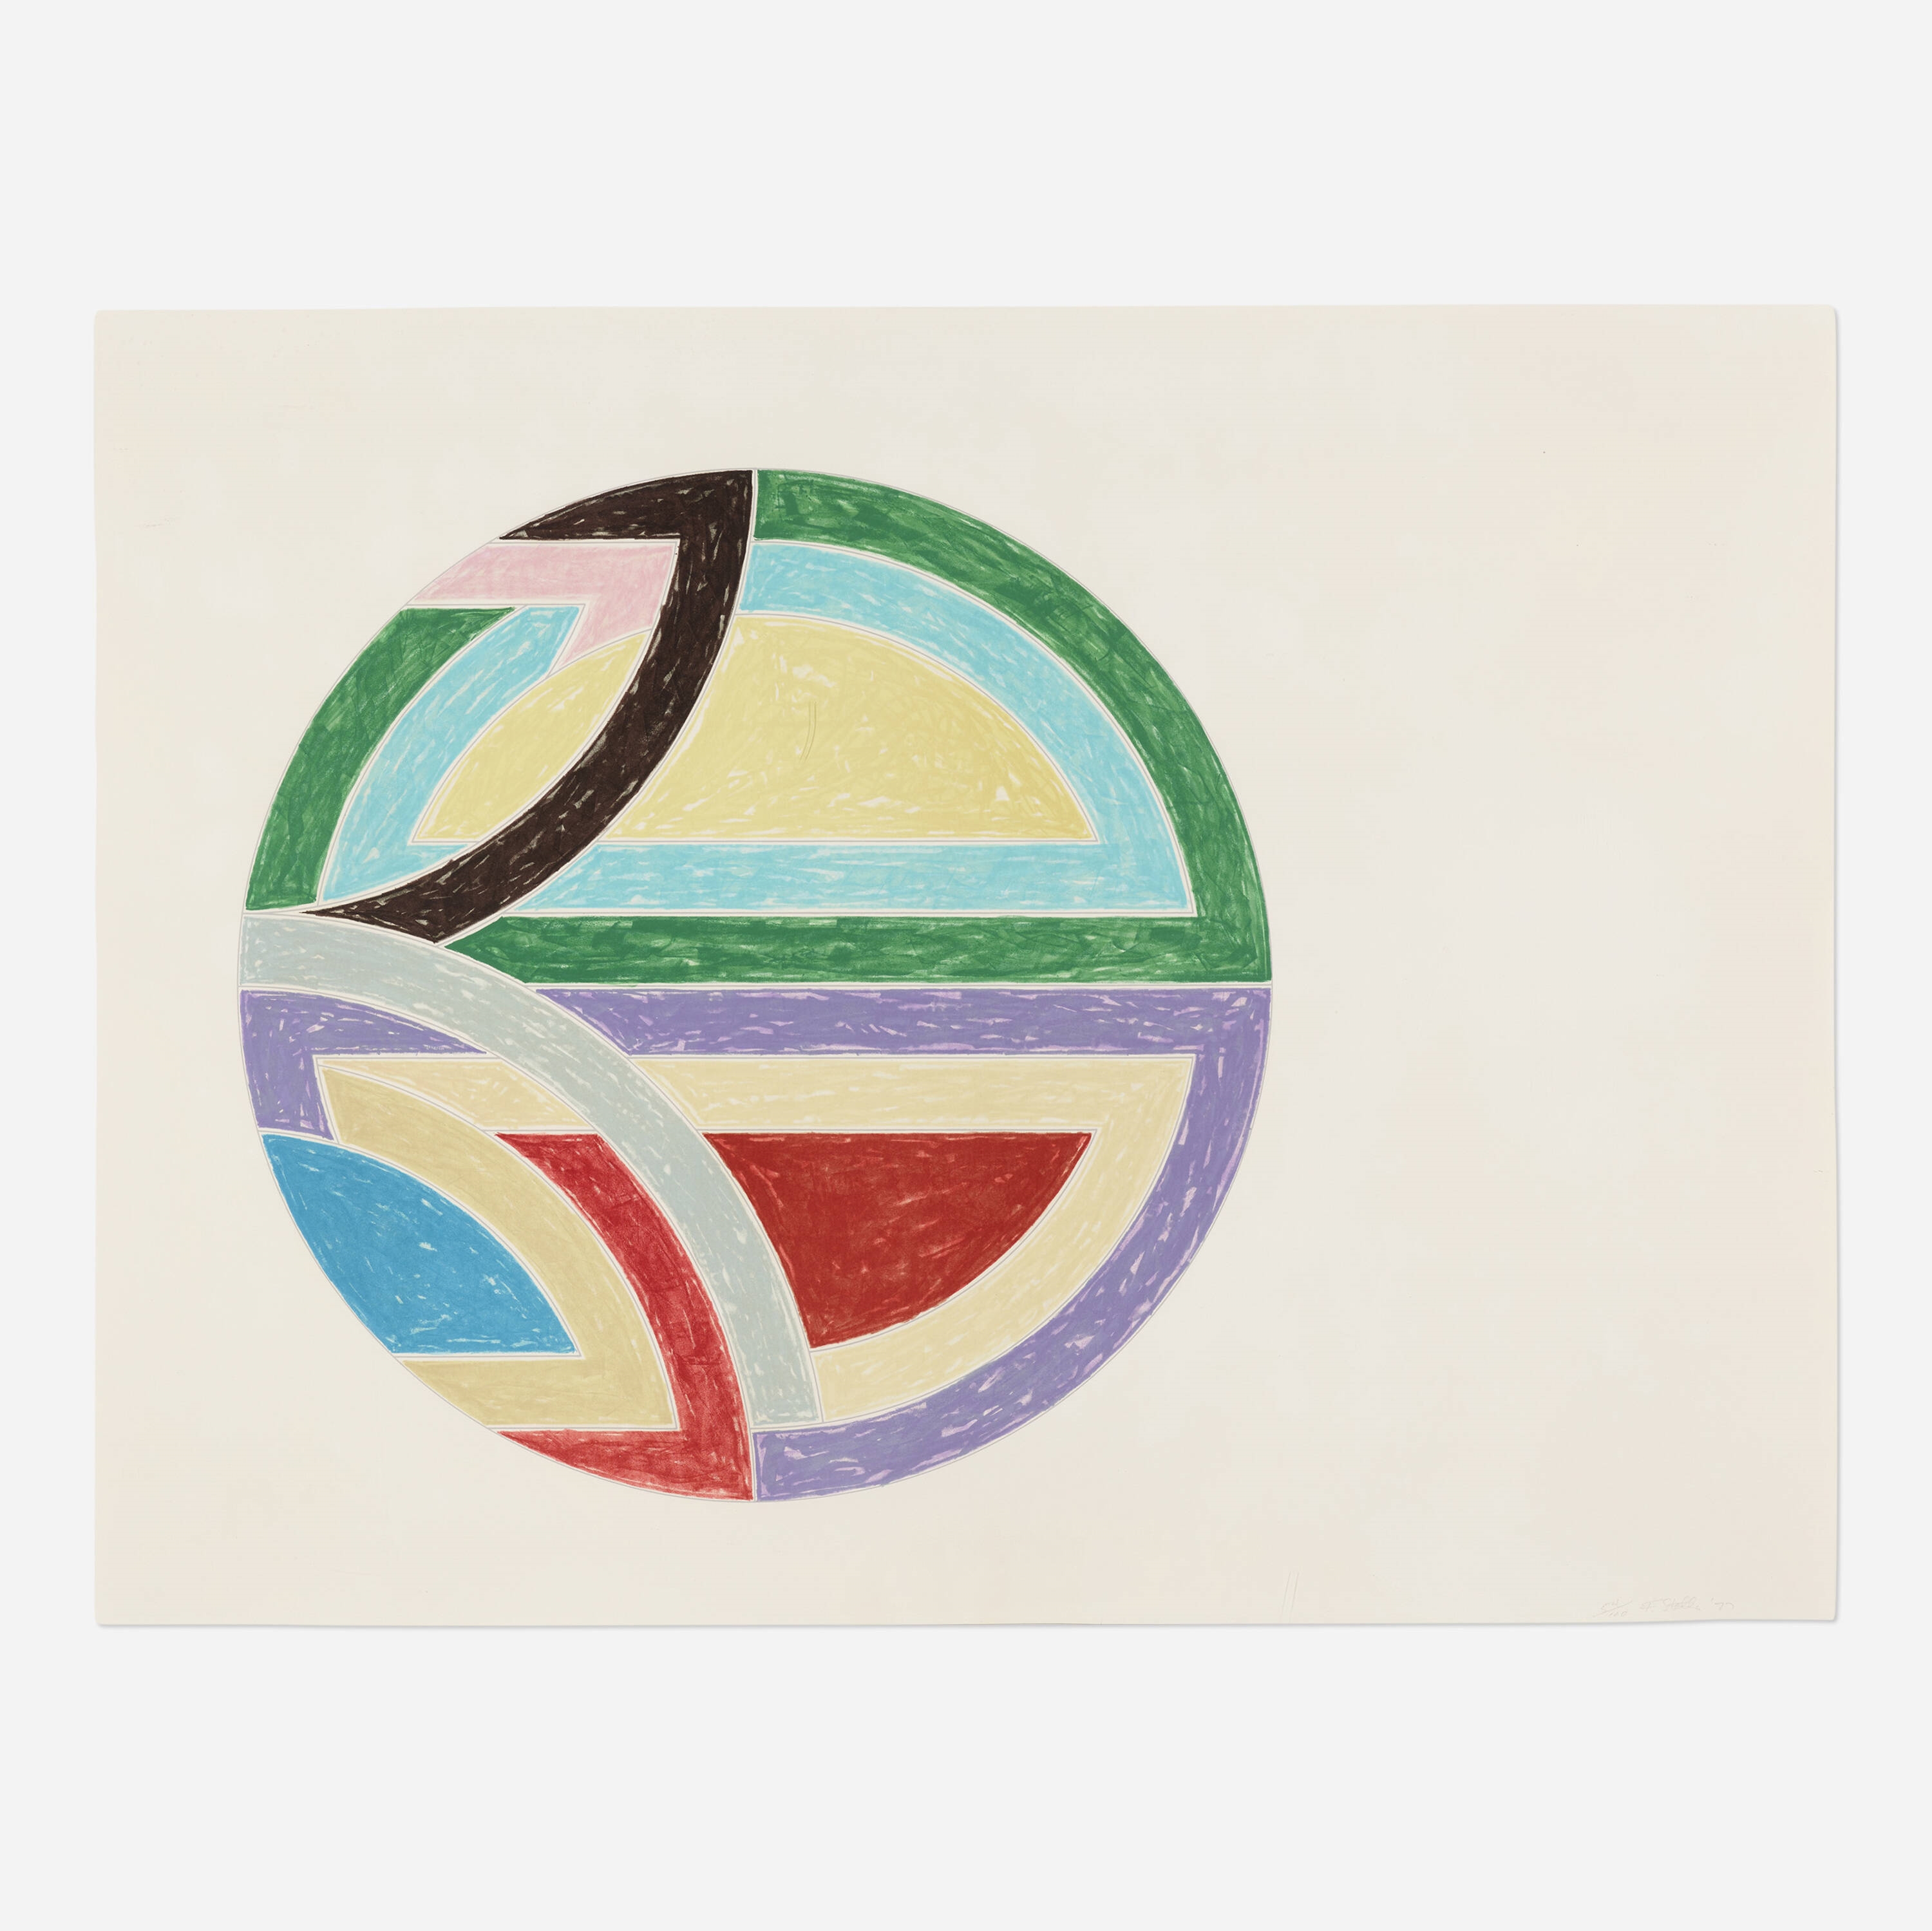 Sinjerli Variation I by Frank Stella, 1977